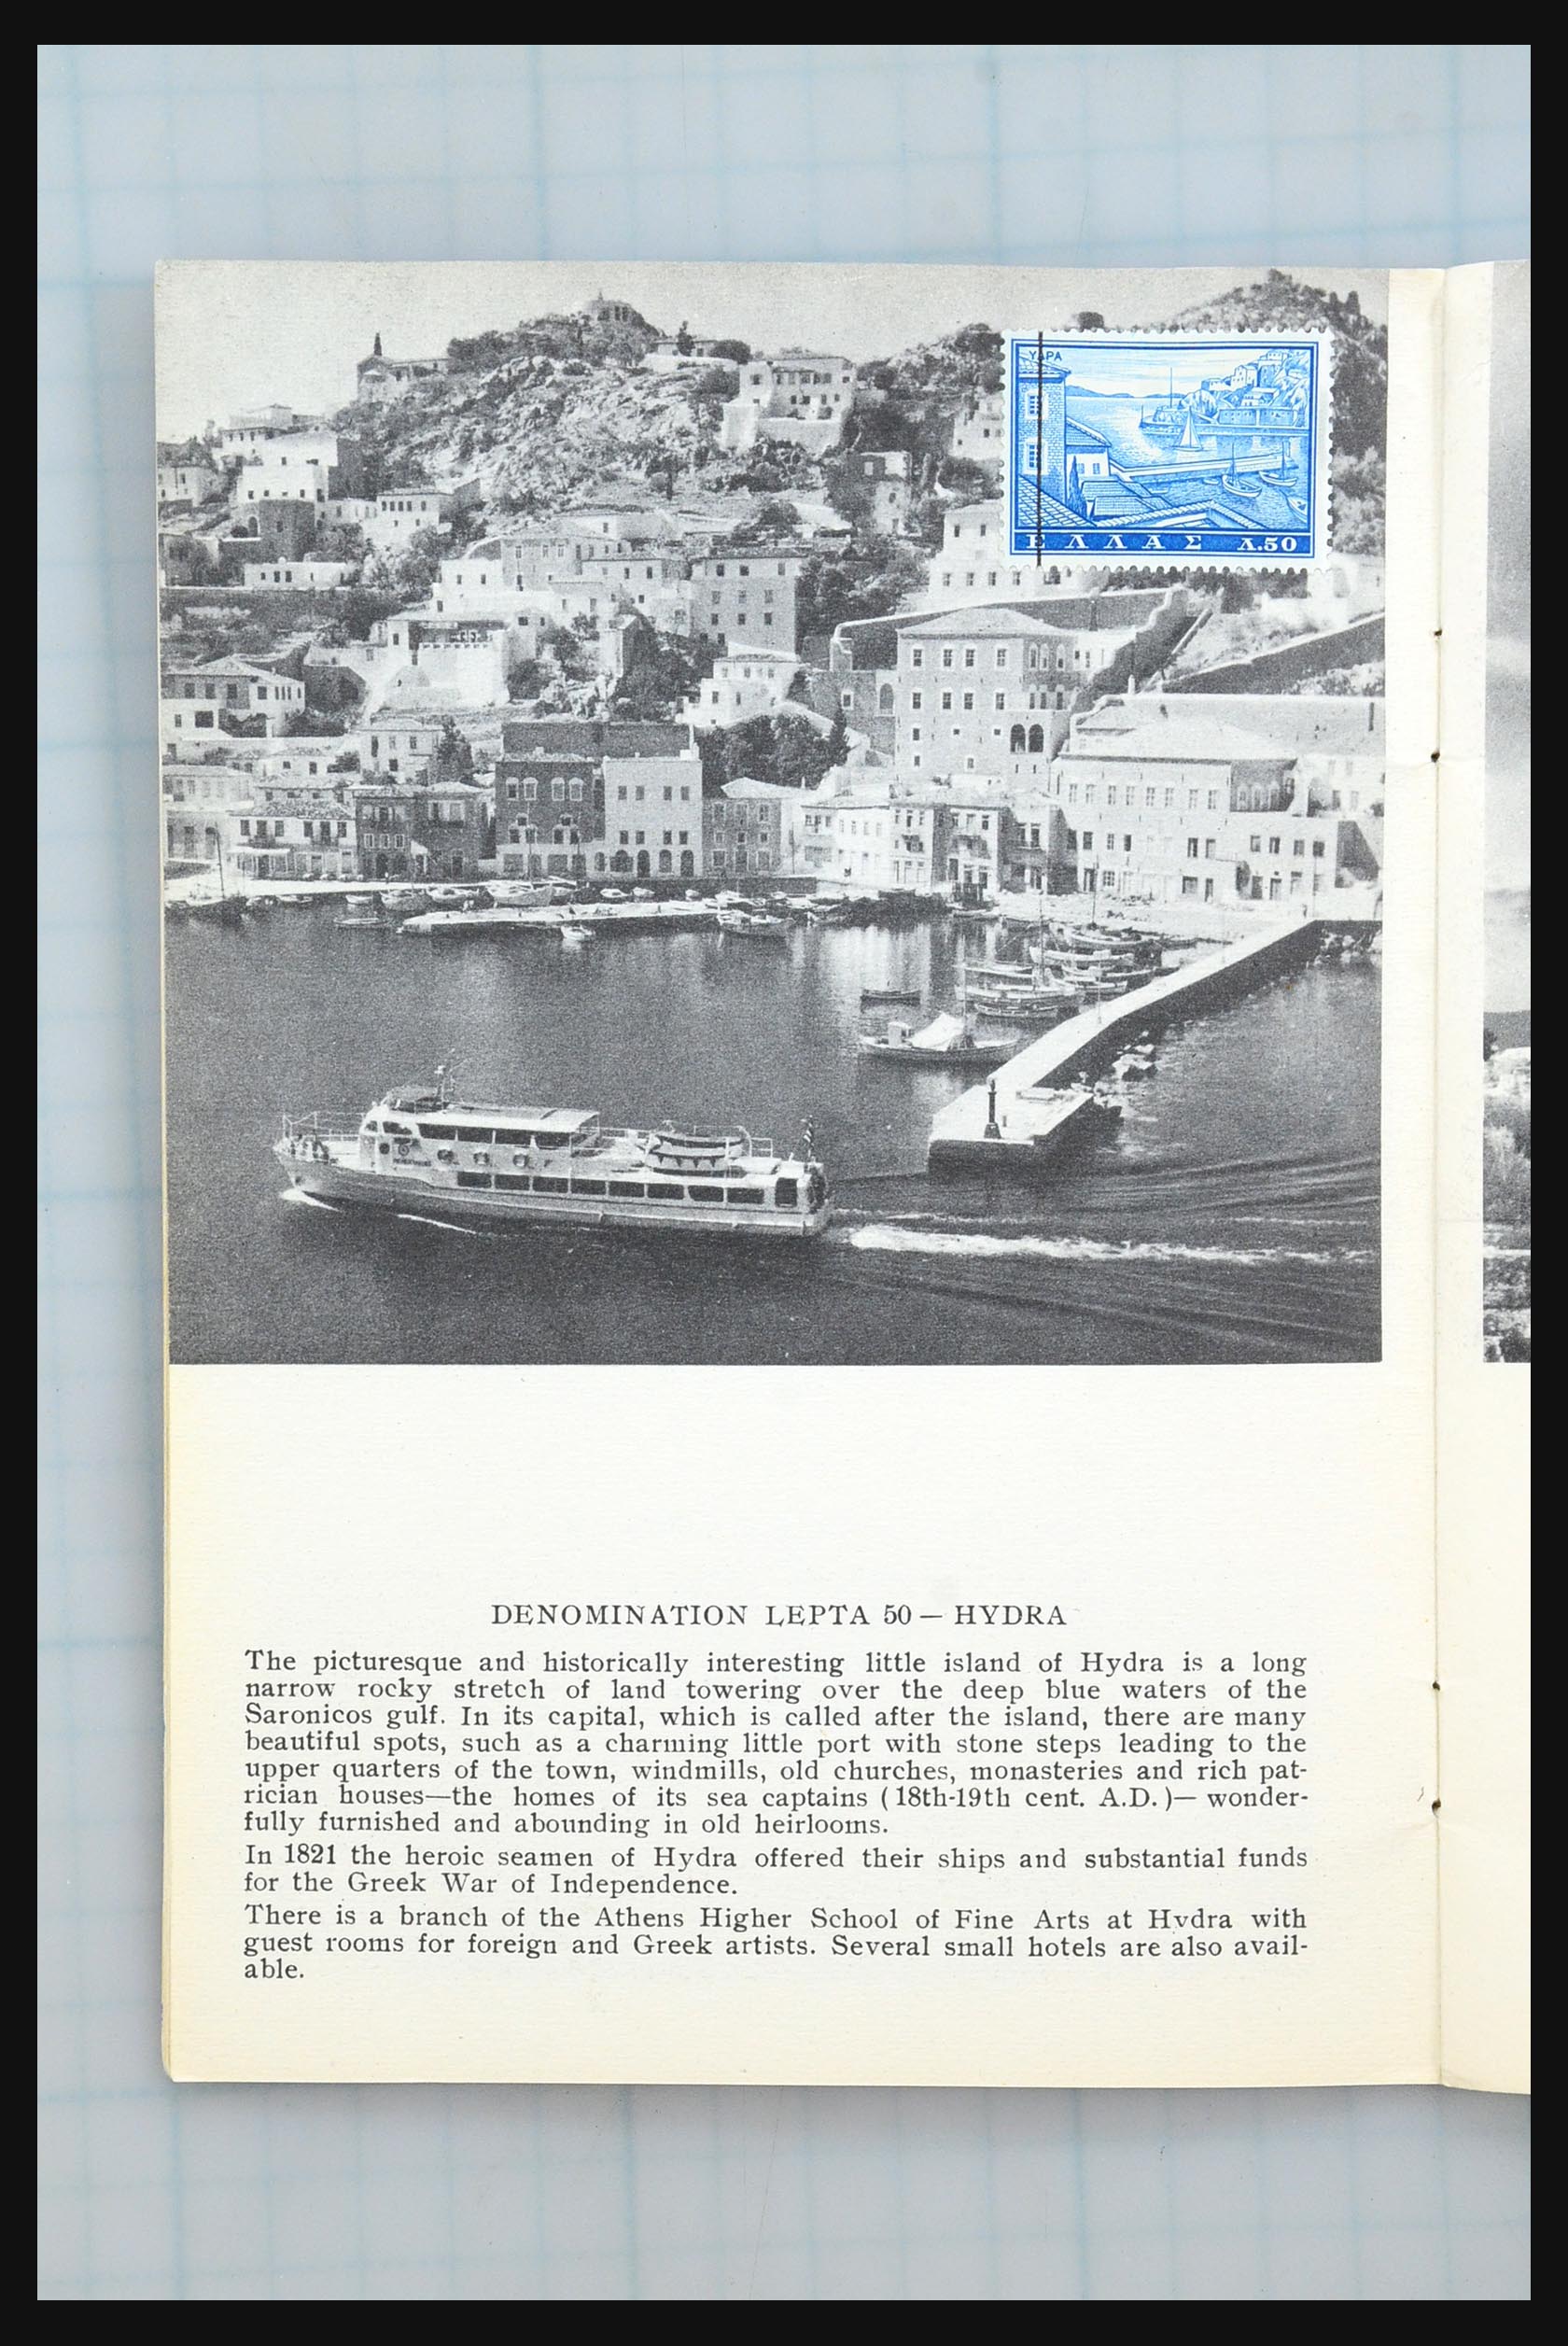 31358 199 - 31358 Portugal/Luxemburg/Griekenland brieven 1880-1960.